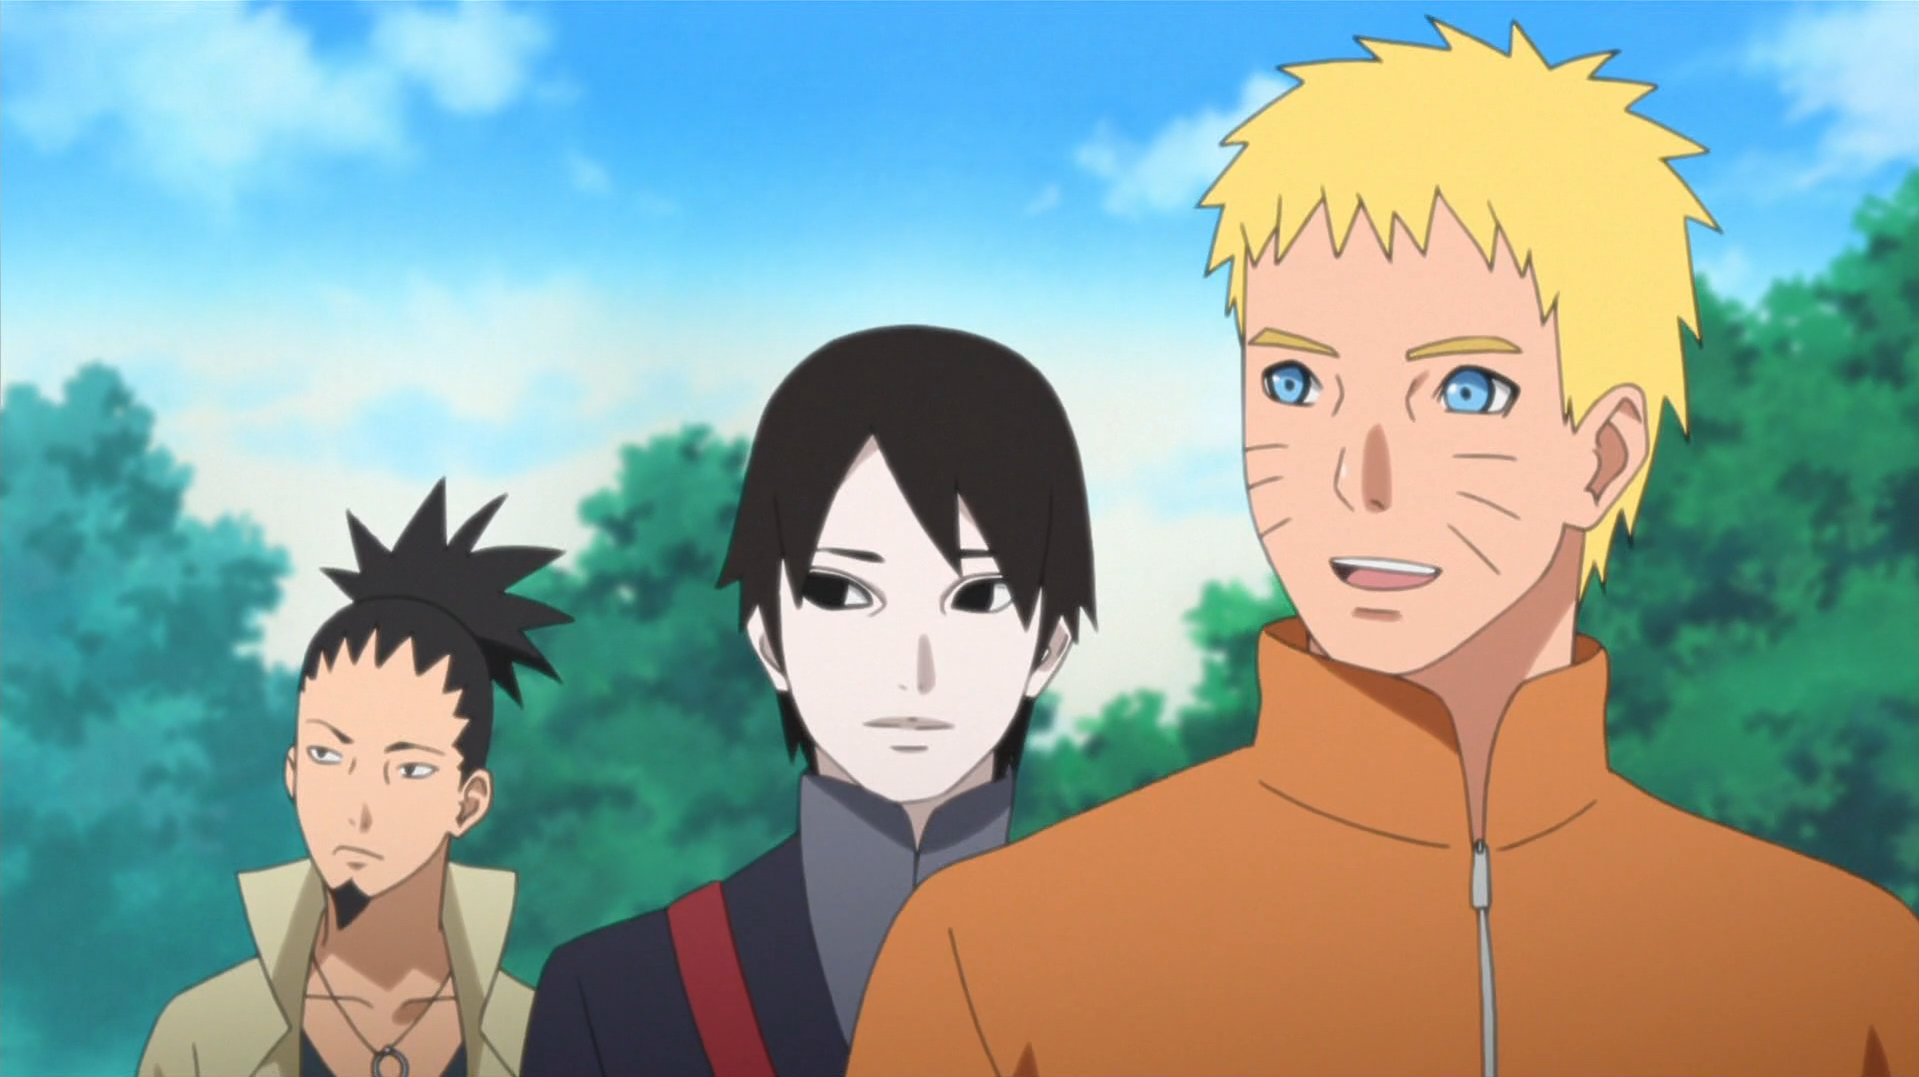 Boruto: Naruto Next Generations Uchiha Sarada (TV Episode 2017